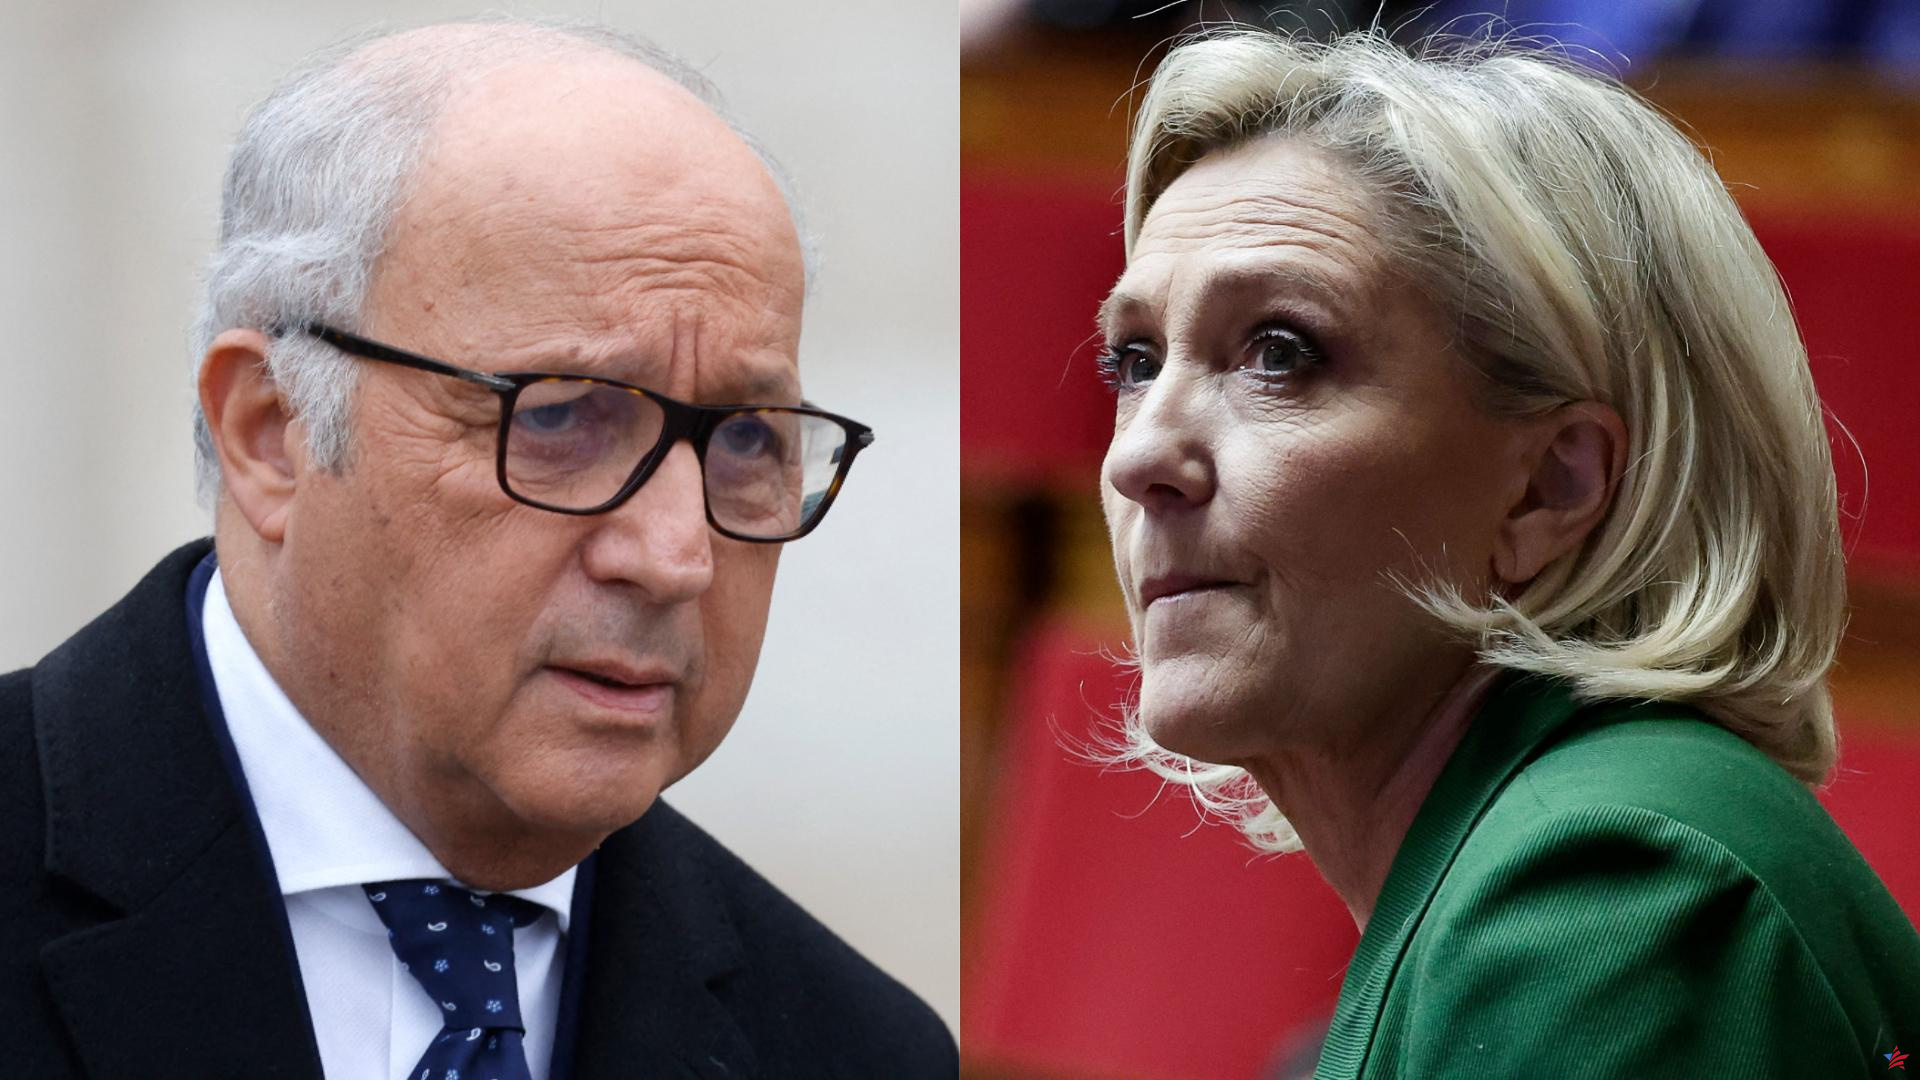 “Fabius amenaza el Estado de derecho”: intercambio de armas entre Marine Le Pen y el presidente del Consejo Constitucional